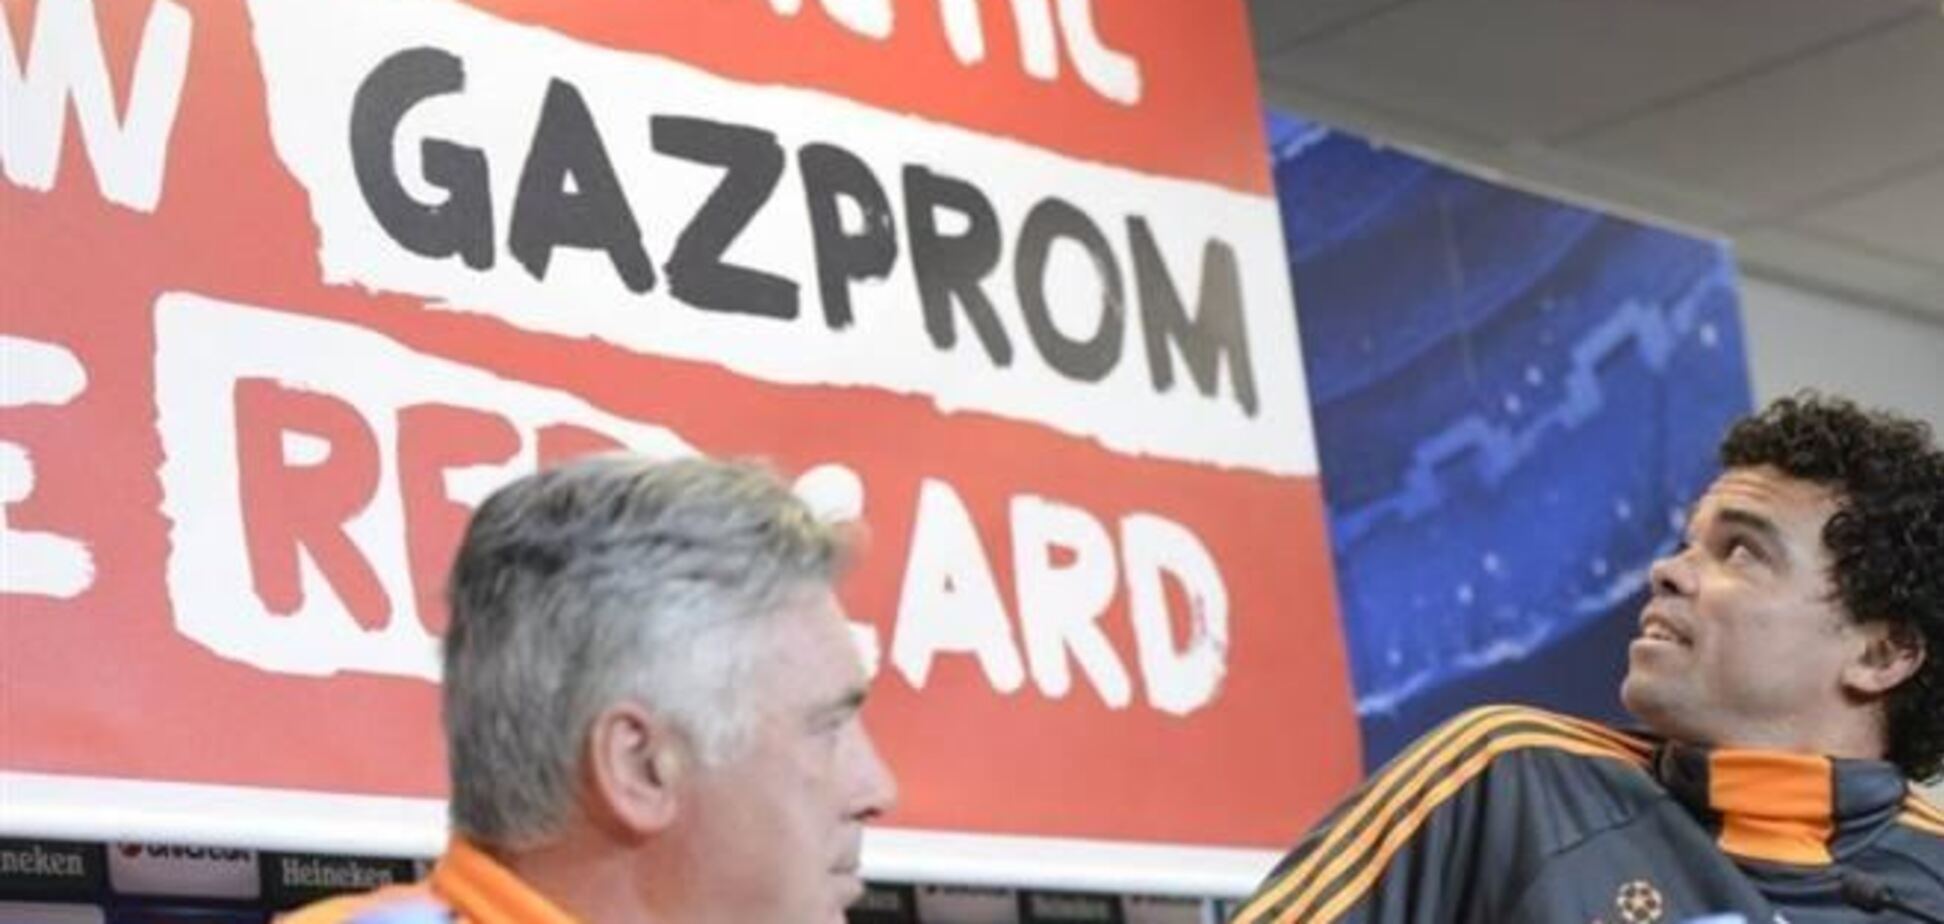 Пресс-конференция 'Реала' прервалась из-за баннера против 'Газпрома'